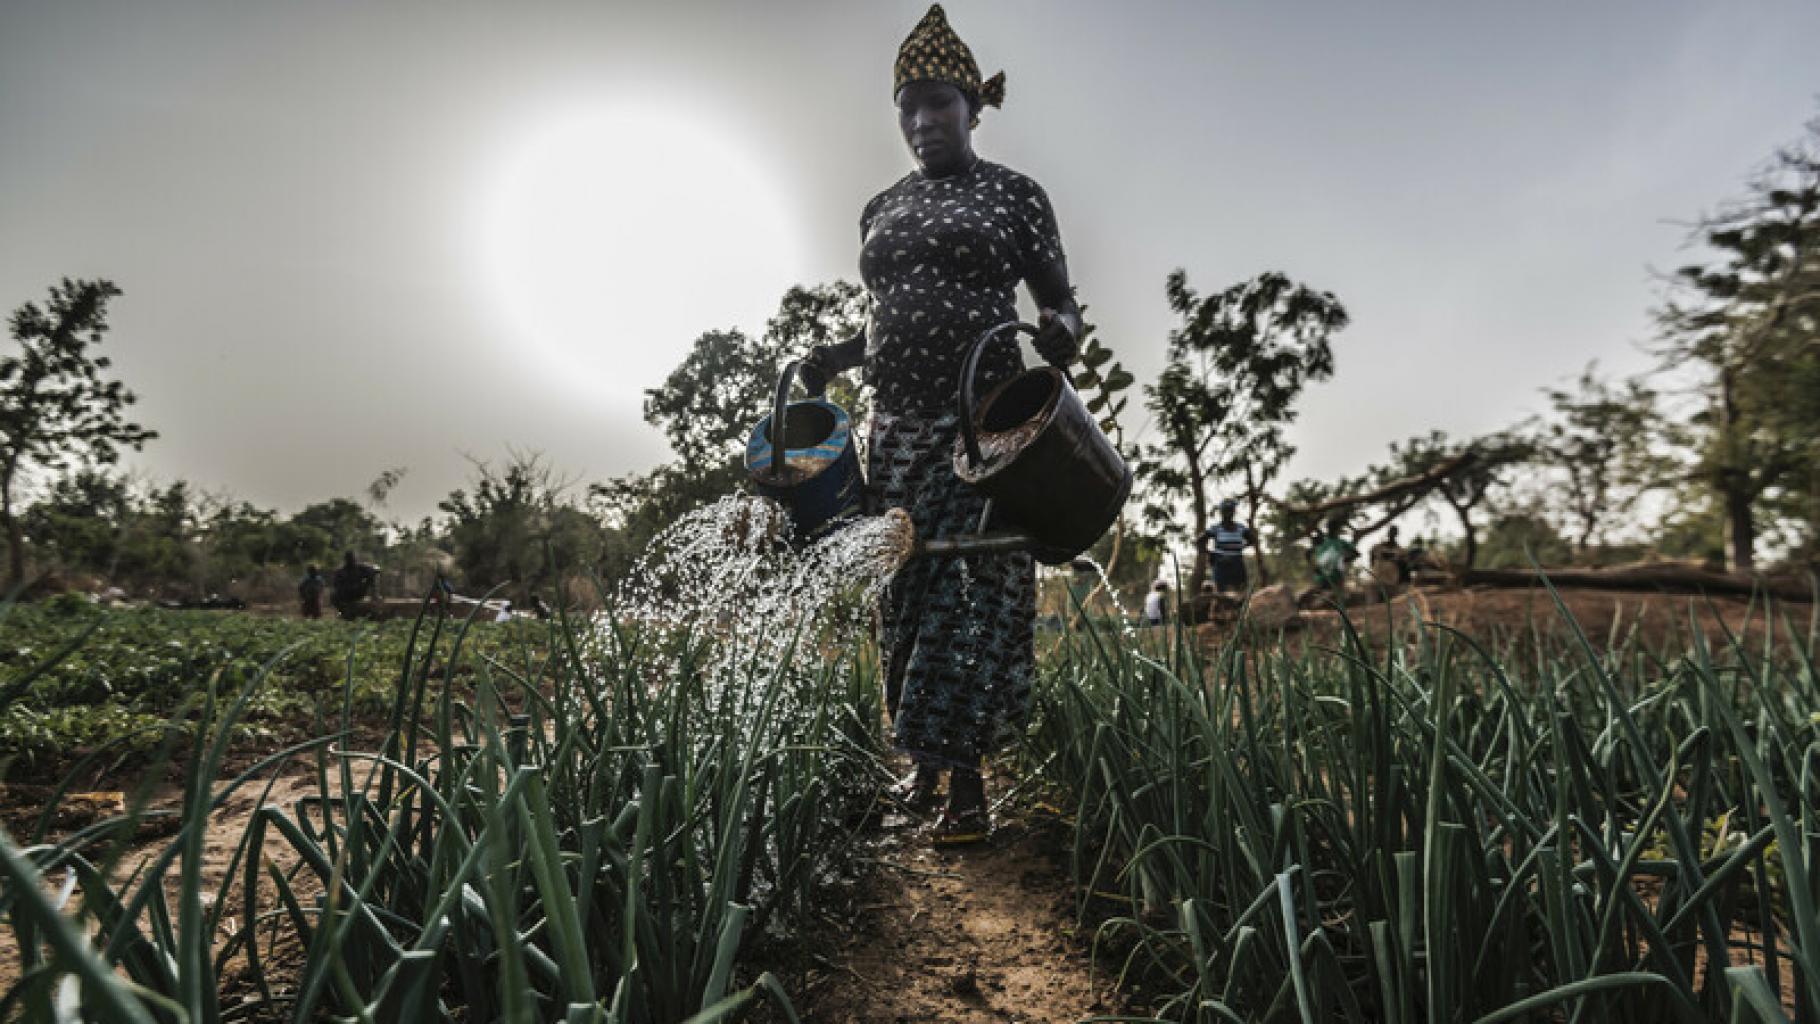 Aguiratou Ouedraogo in Burkina Faso wässert ihr Feld mit Gießkannen.